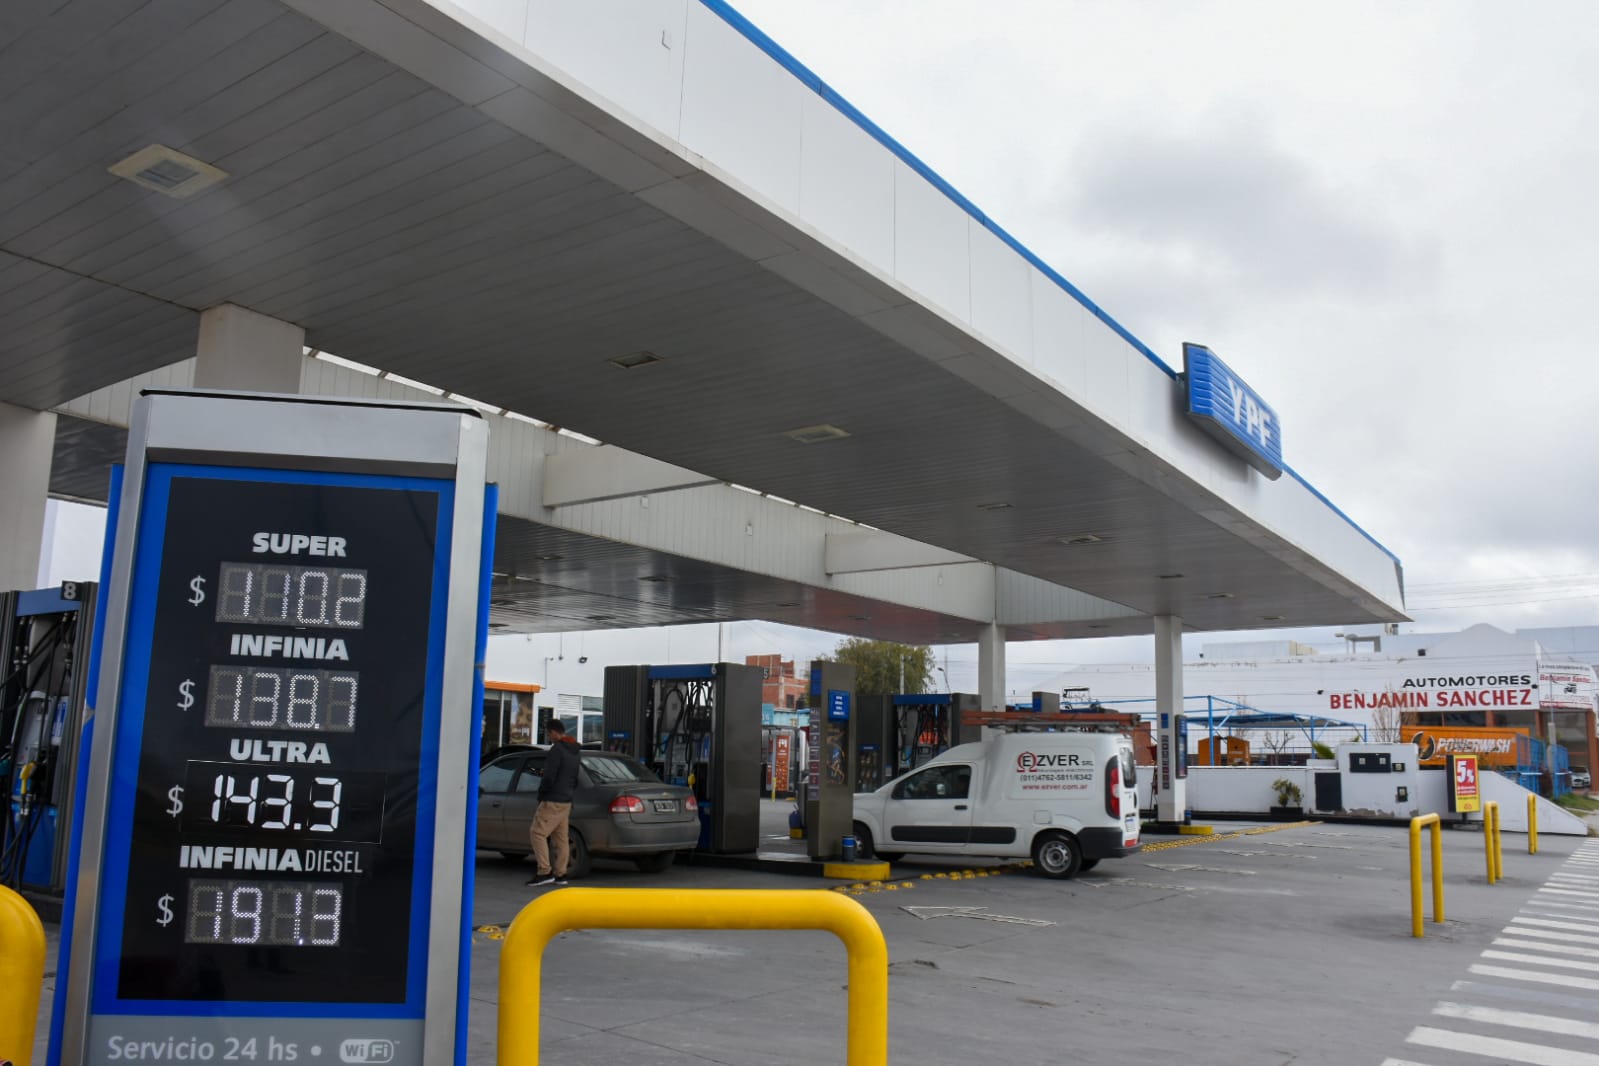 Así quedaron los precios de los combustibles en Roca, luego del aumento de YPF. Fotos Juan Thomes.